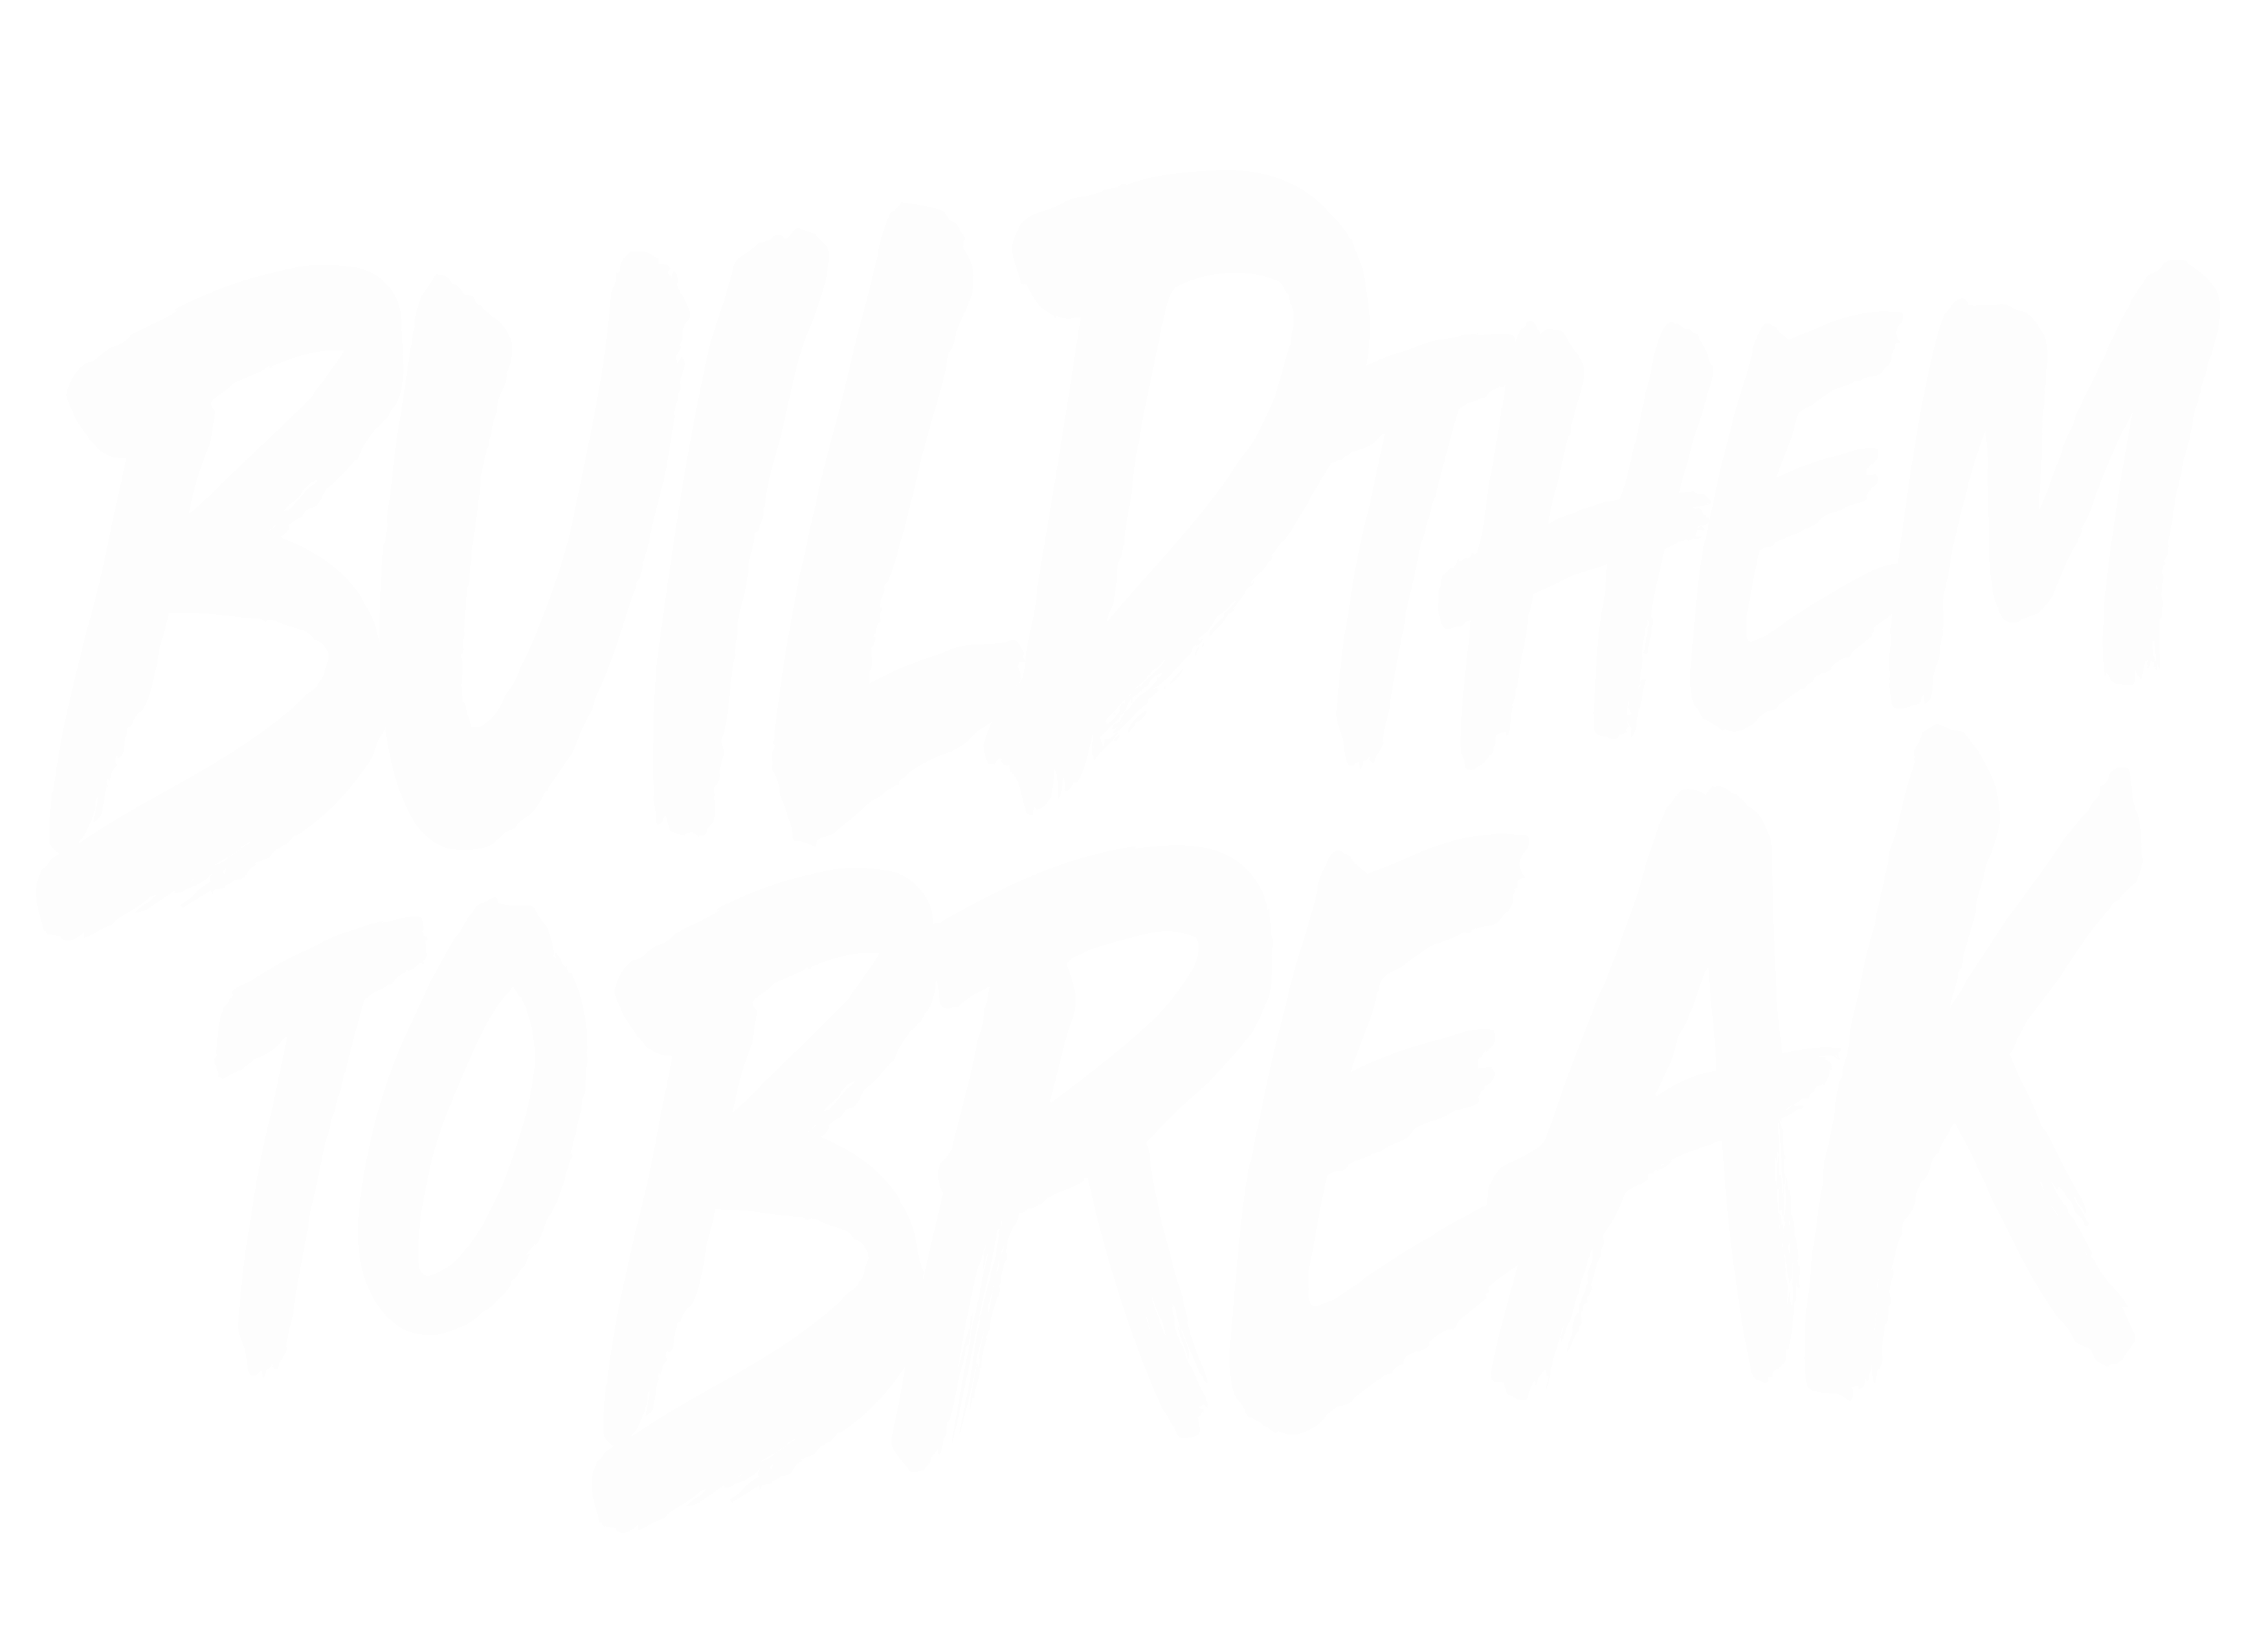 Build Them To Break